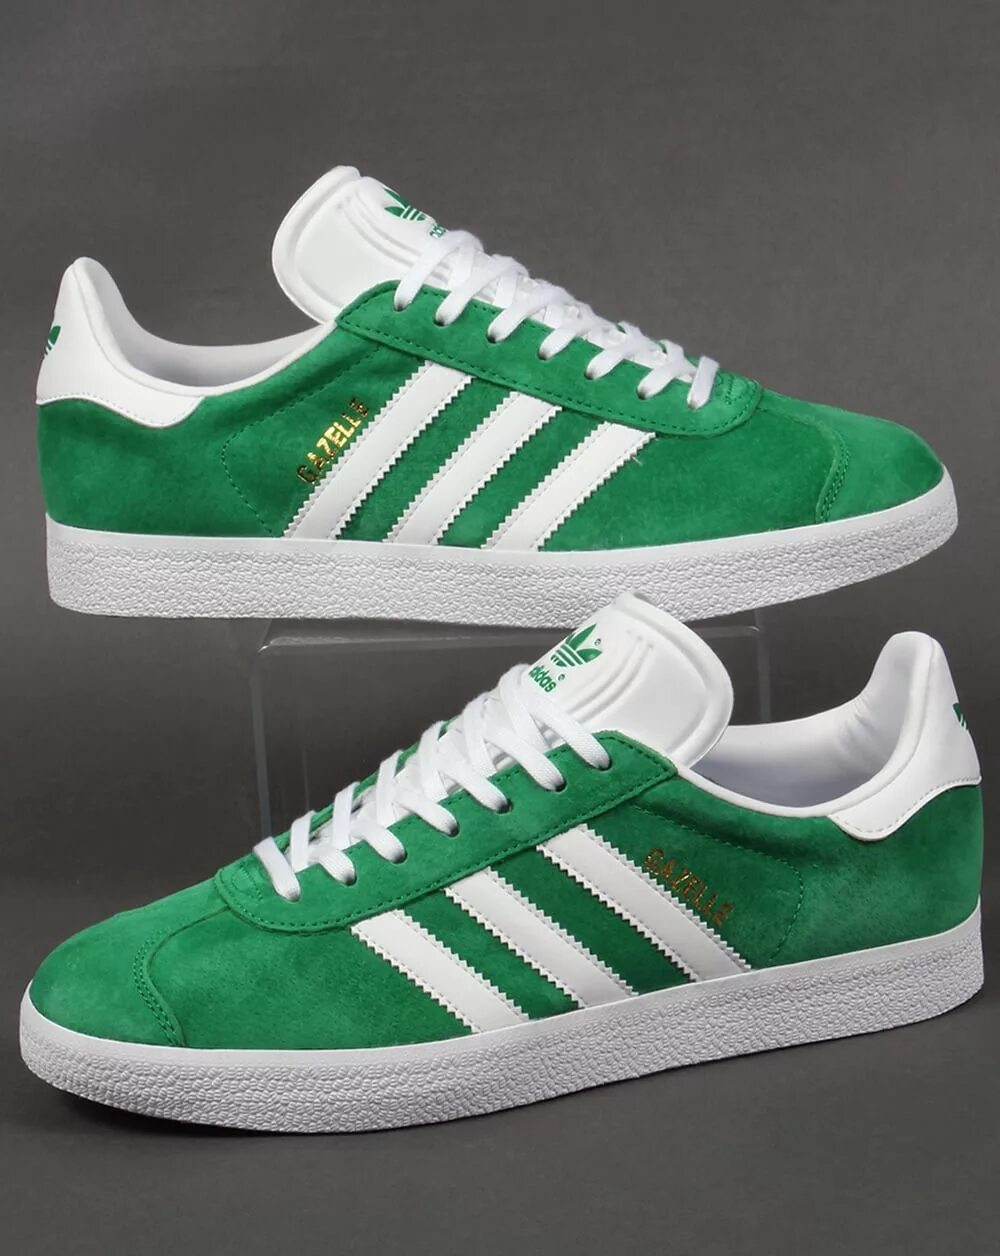 Кроссовки adidas Gazelle Green. Adidas Gazelle White Green. Adidas Gazelle зеленые. Кеды adidas Originals Gazelle Green. Gazelle original